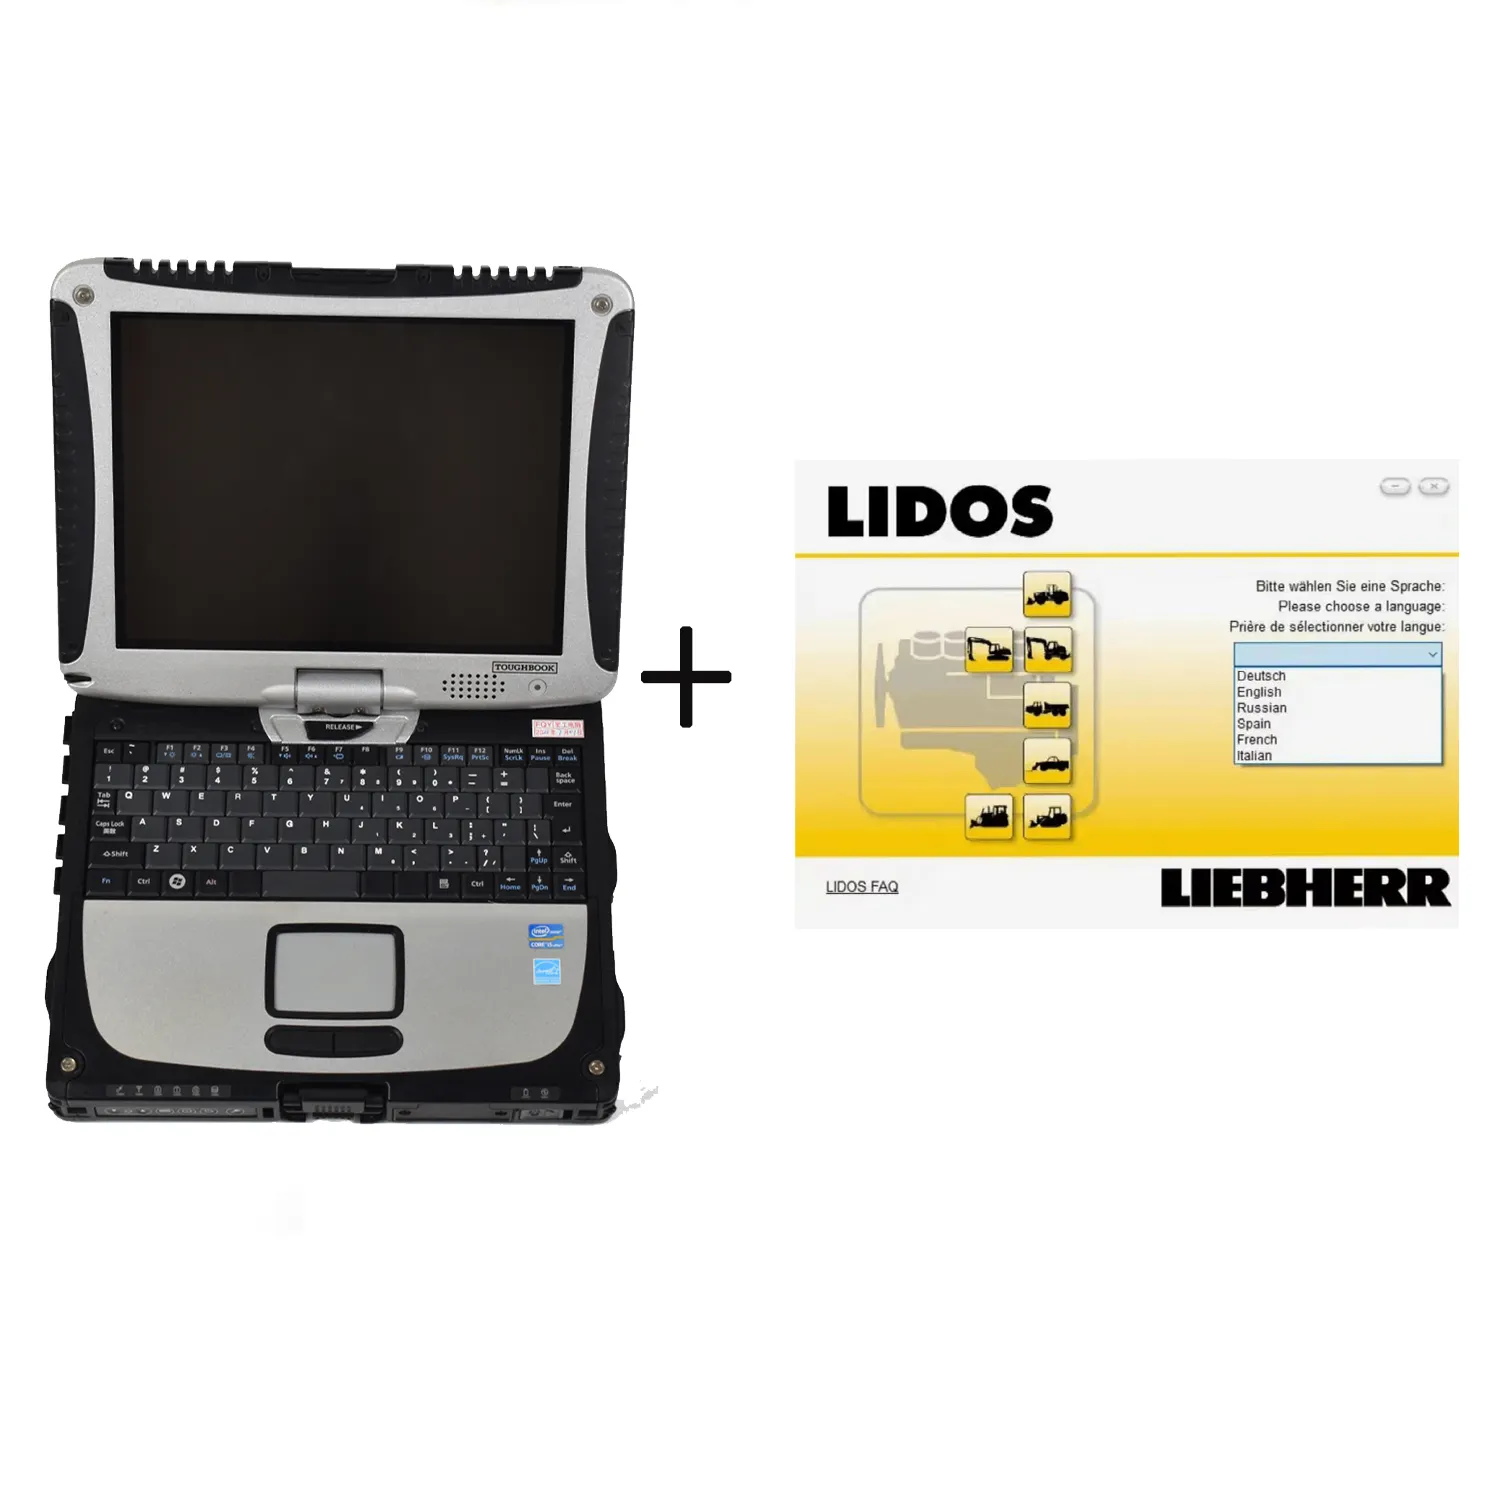 Liebherr Lidos Conjunto completo de peças e serviços offline + HDD500GB (você pode selecionar Keygen) + laptop CF19